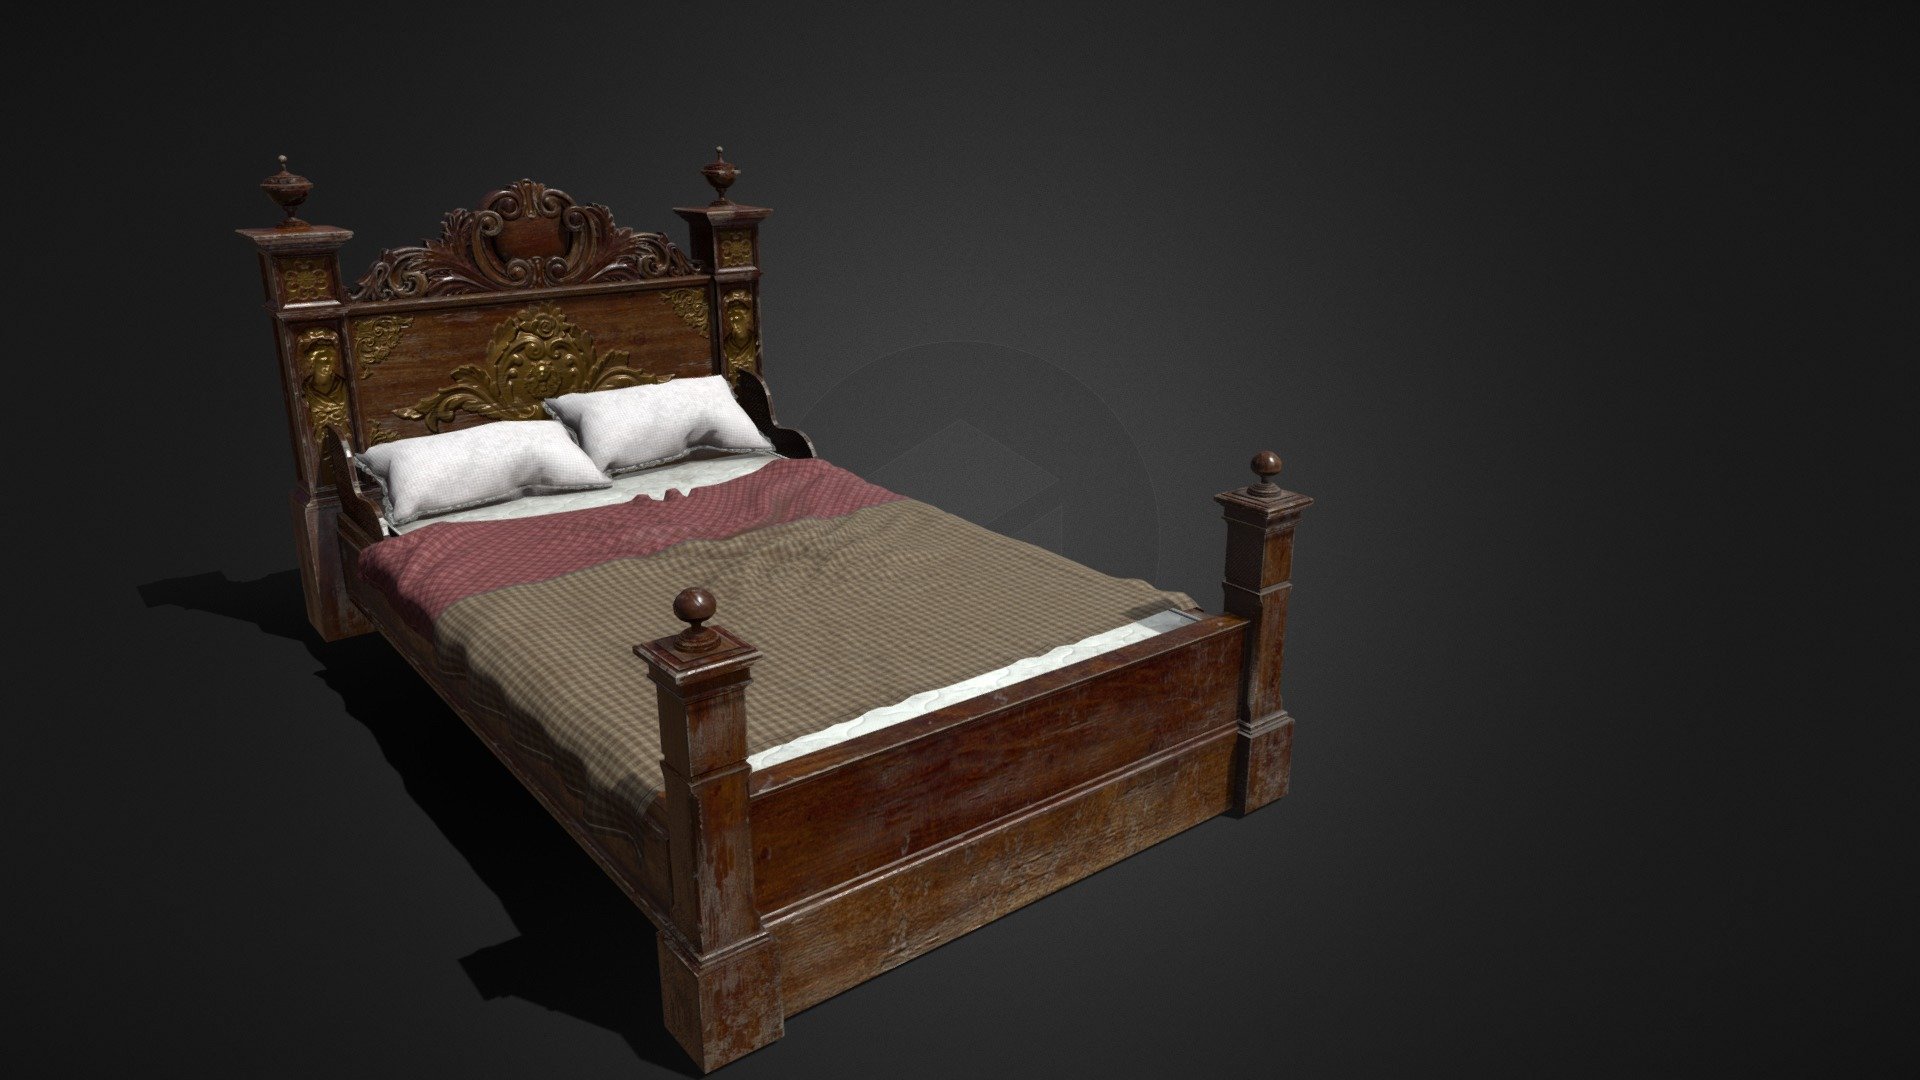 Antique Bed - 3D model by Recpin (@RecpinsTR) 3d model